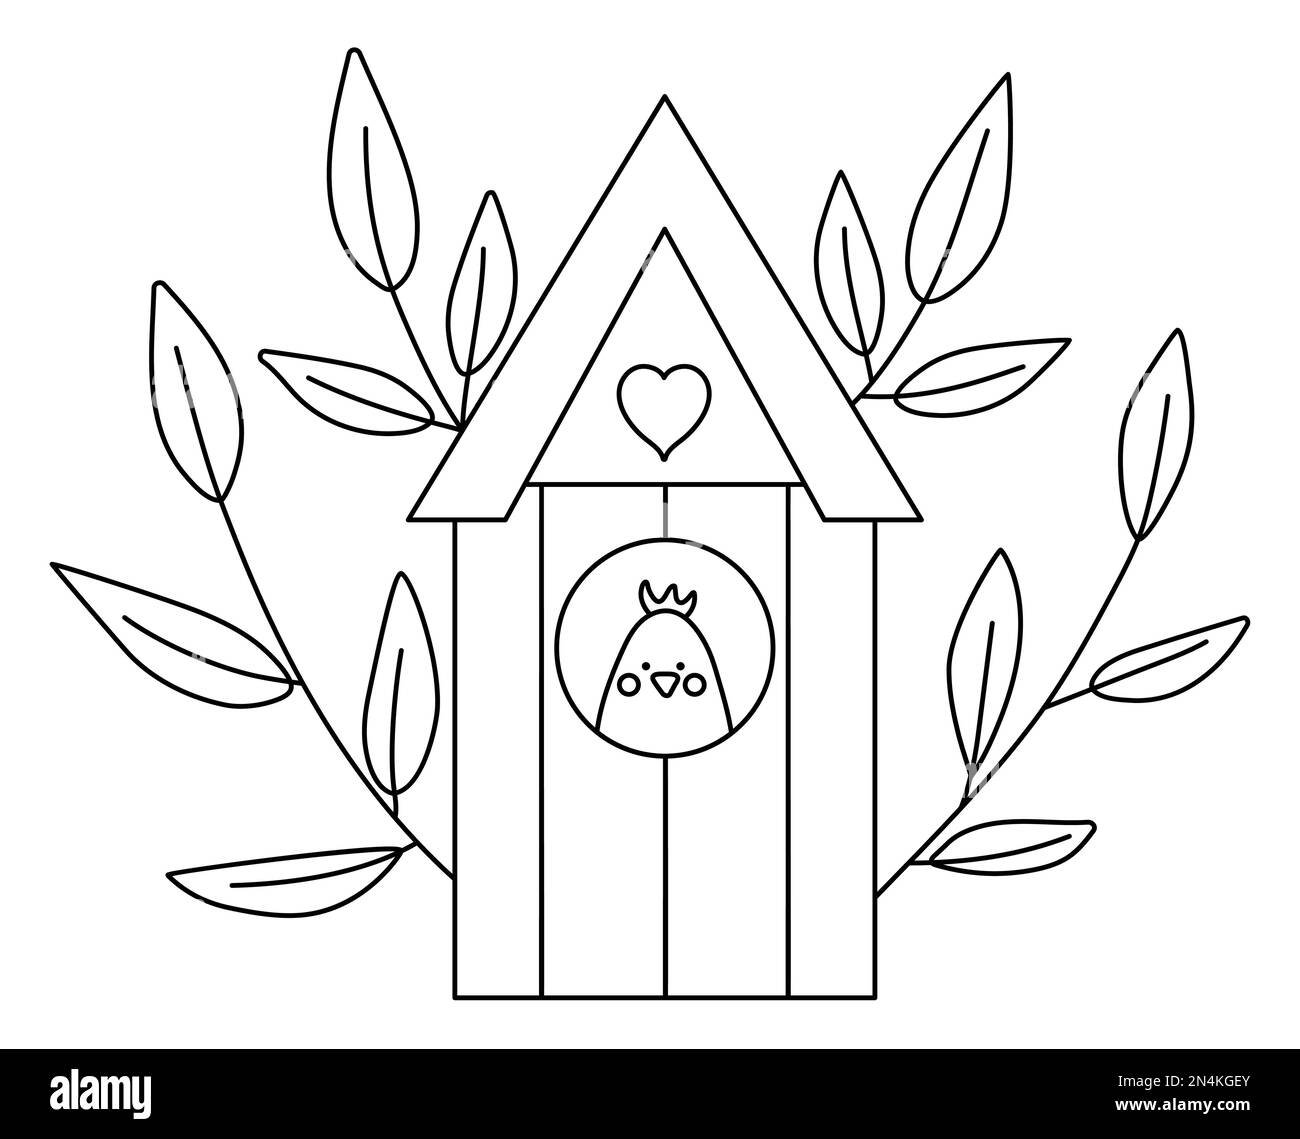 Vector schwarz-weiße Vogelhaus-Illustration mit Baumzweigen und Küken drinnen. Symbol für verschachtelte Rahmenlinie oder Farbseite. Starling-Haus-Malerseite. Stock Vektor